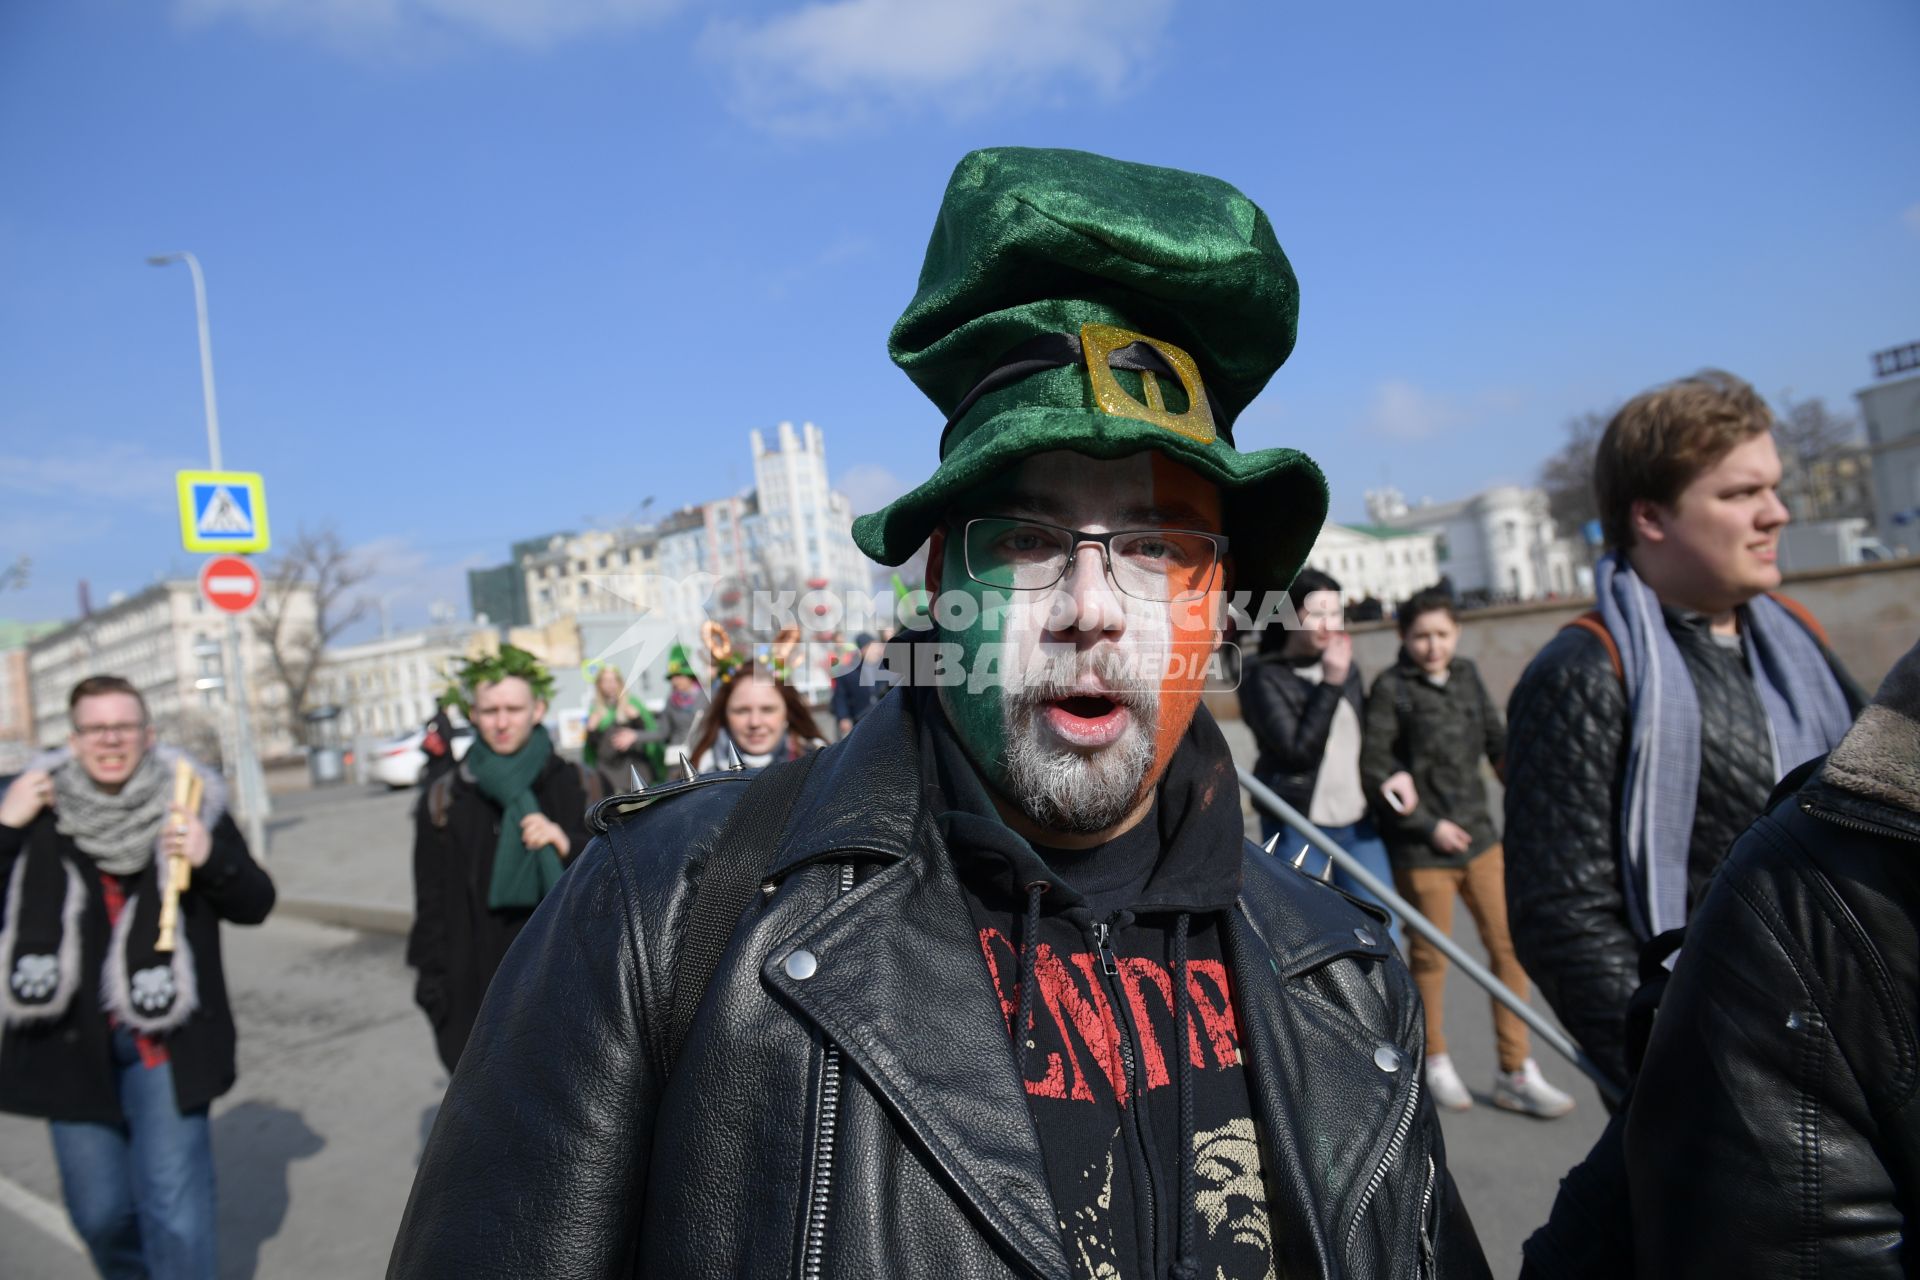 Москва. Мужчина  с лицом, раскрашенным в цвета  Ирландского флага  на празднике в честь  Дня святого Патрика  на  Арбате.